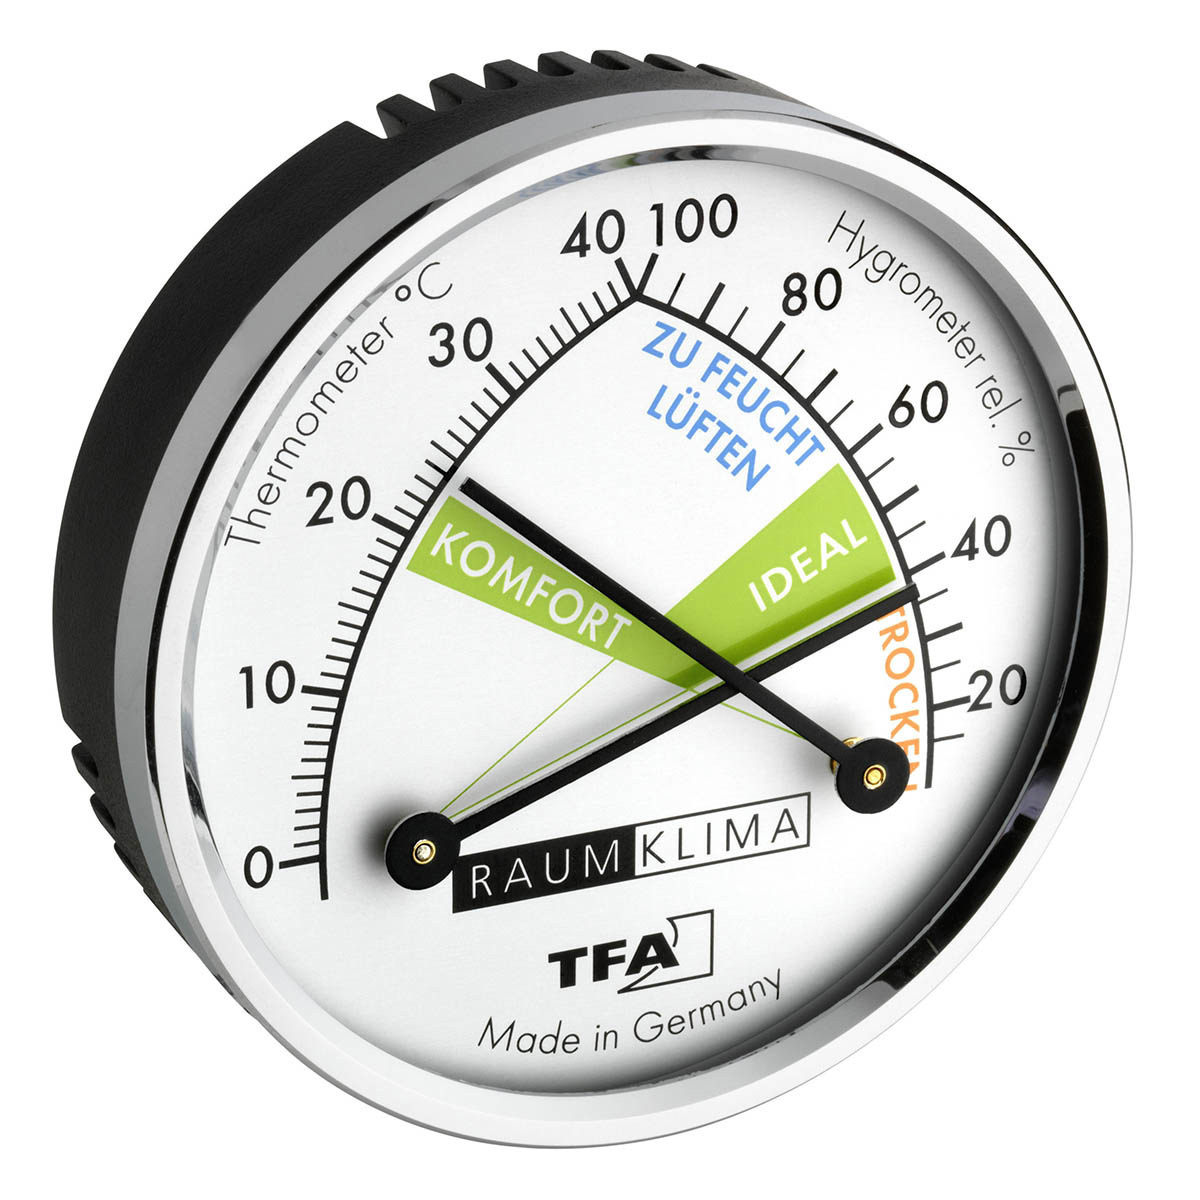 Analoges Thermo-Hygrometer mit Metallring